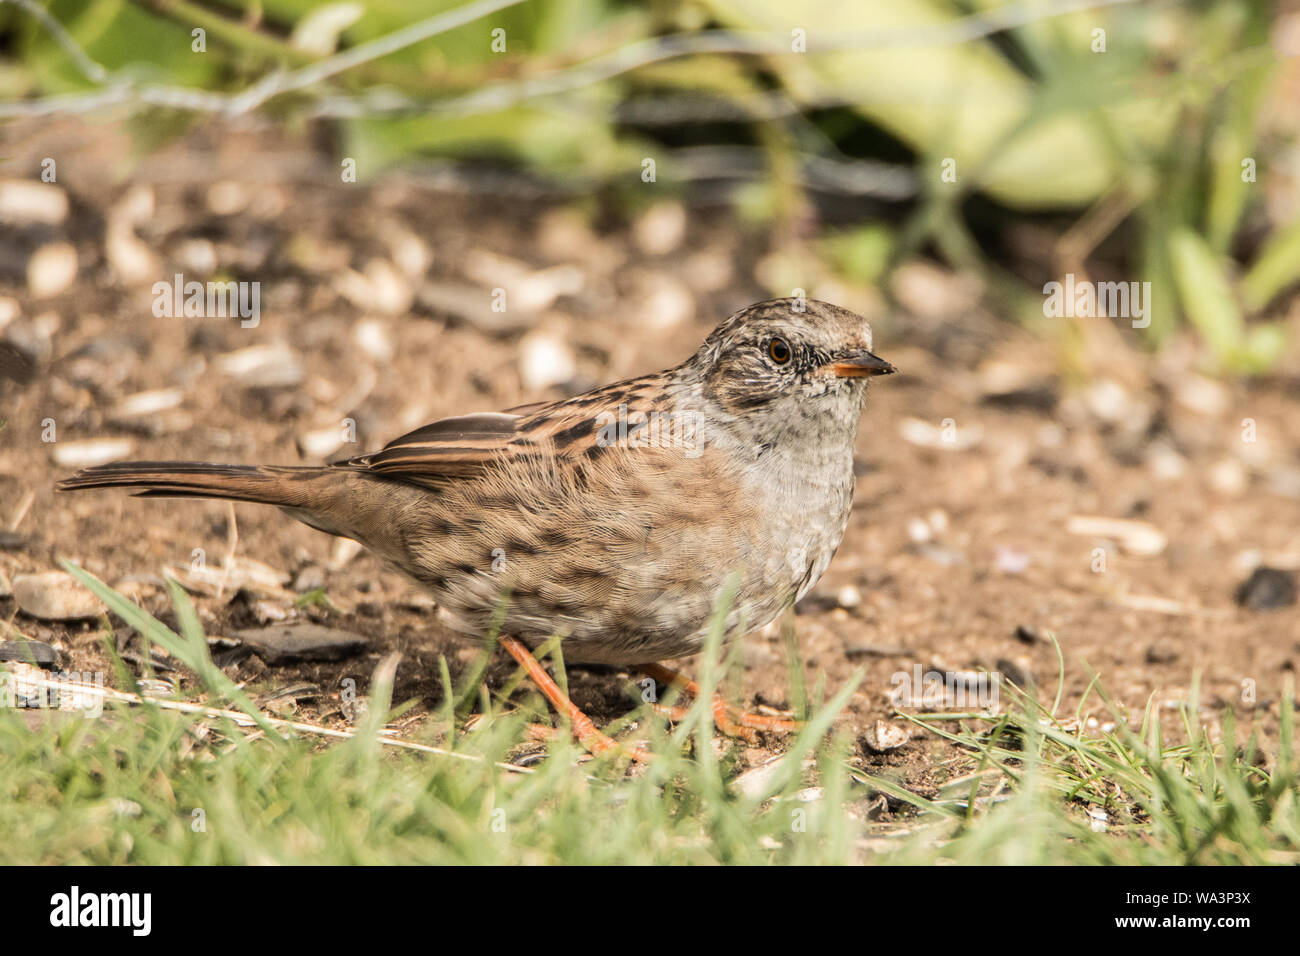 Les oiseaux sauvages, nid, Prunella modularis, chercher de la nourriture dans l'été, en jardin, 2019 Banque D'Images